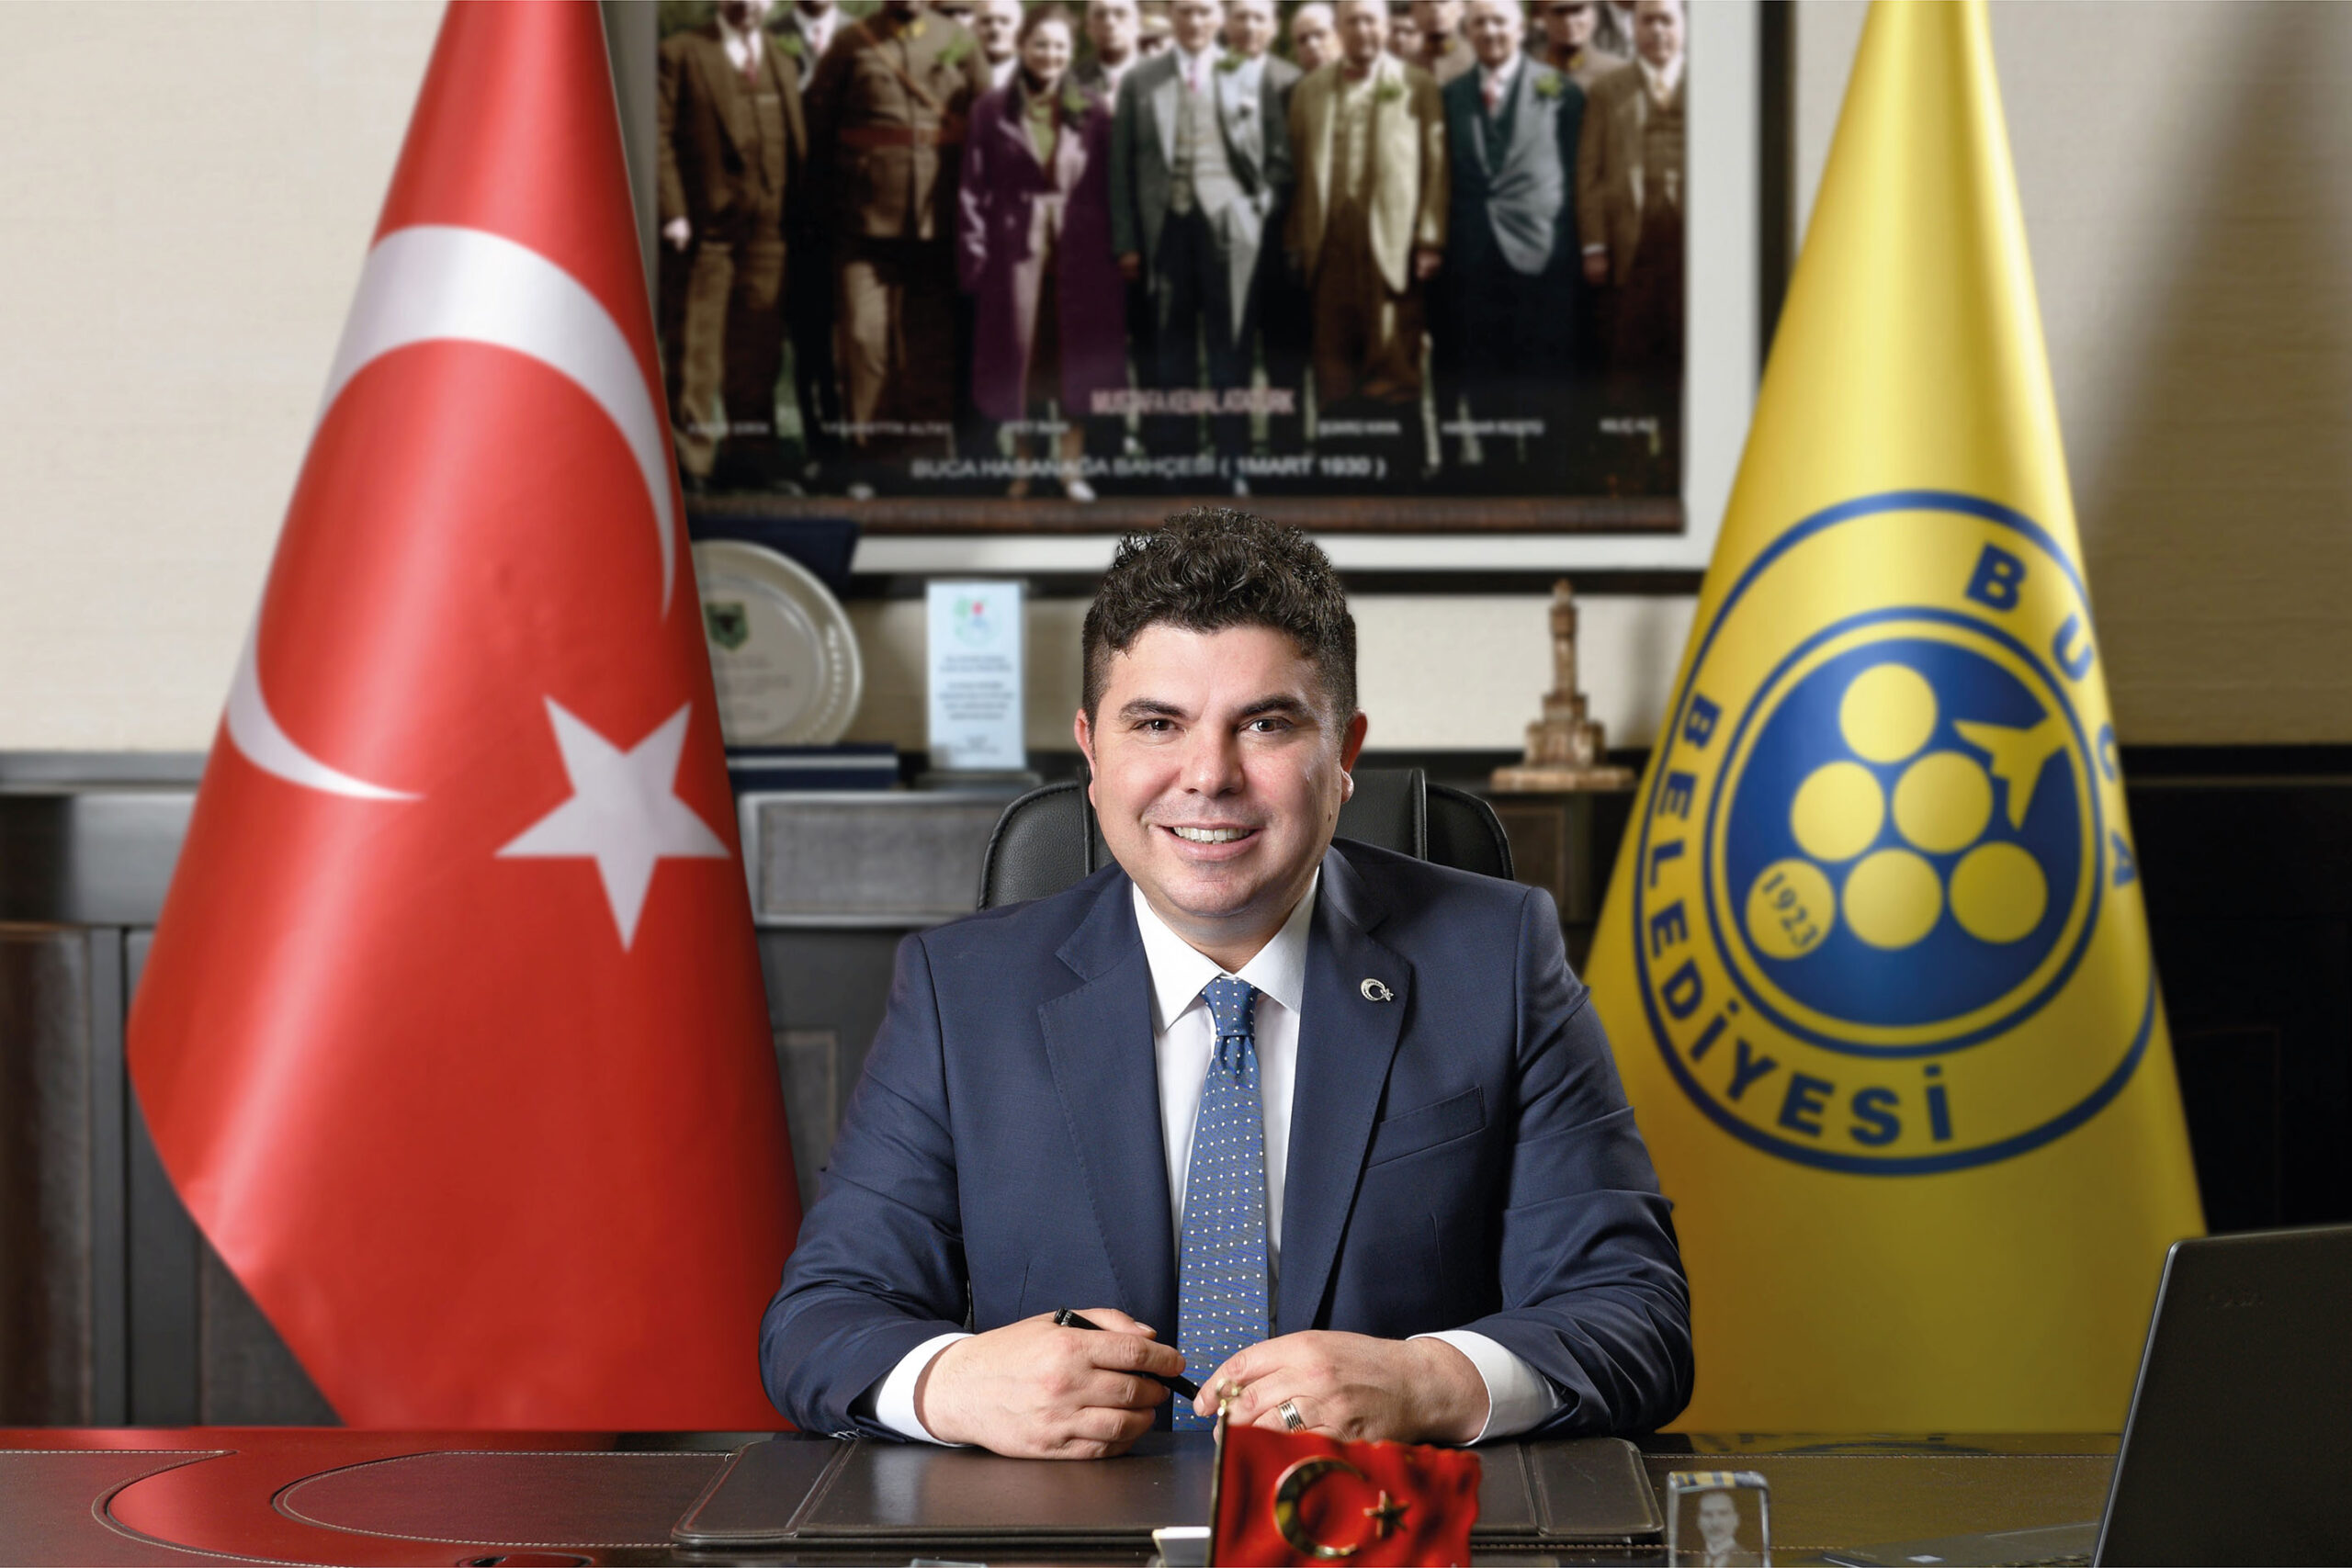 Buca Belediye Başkanı Erhan Kılıç, Kaza Geçirdi